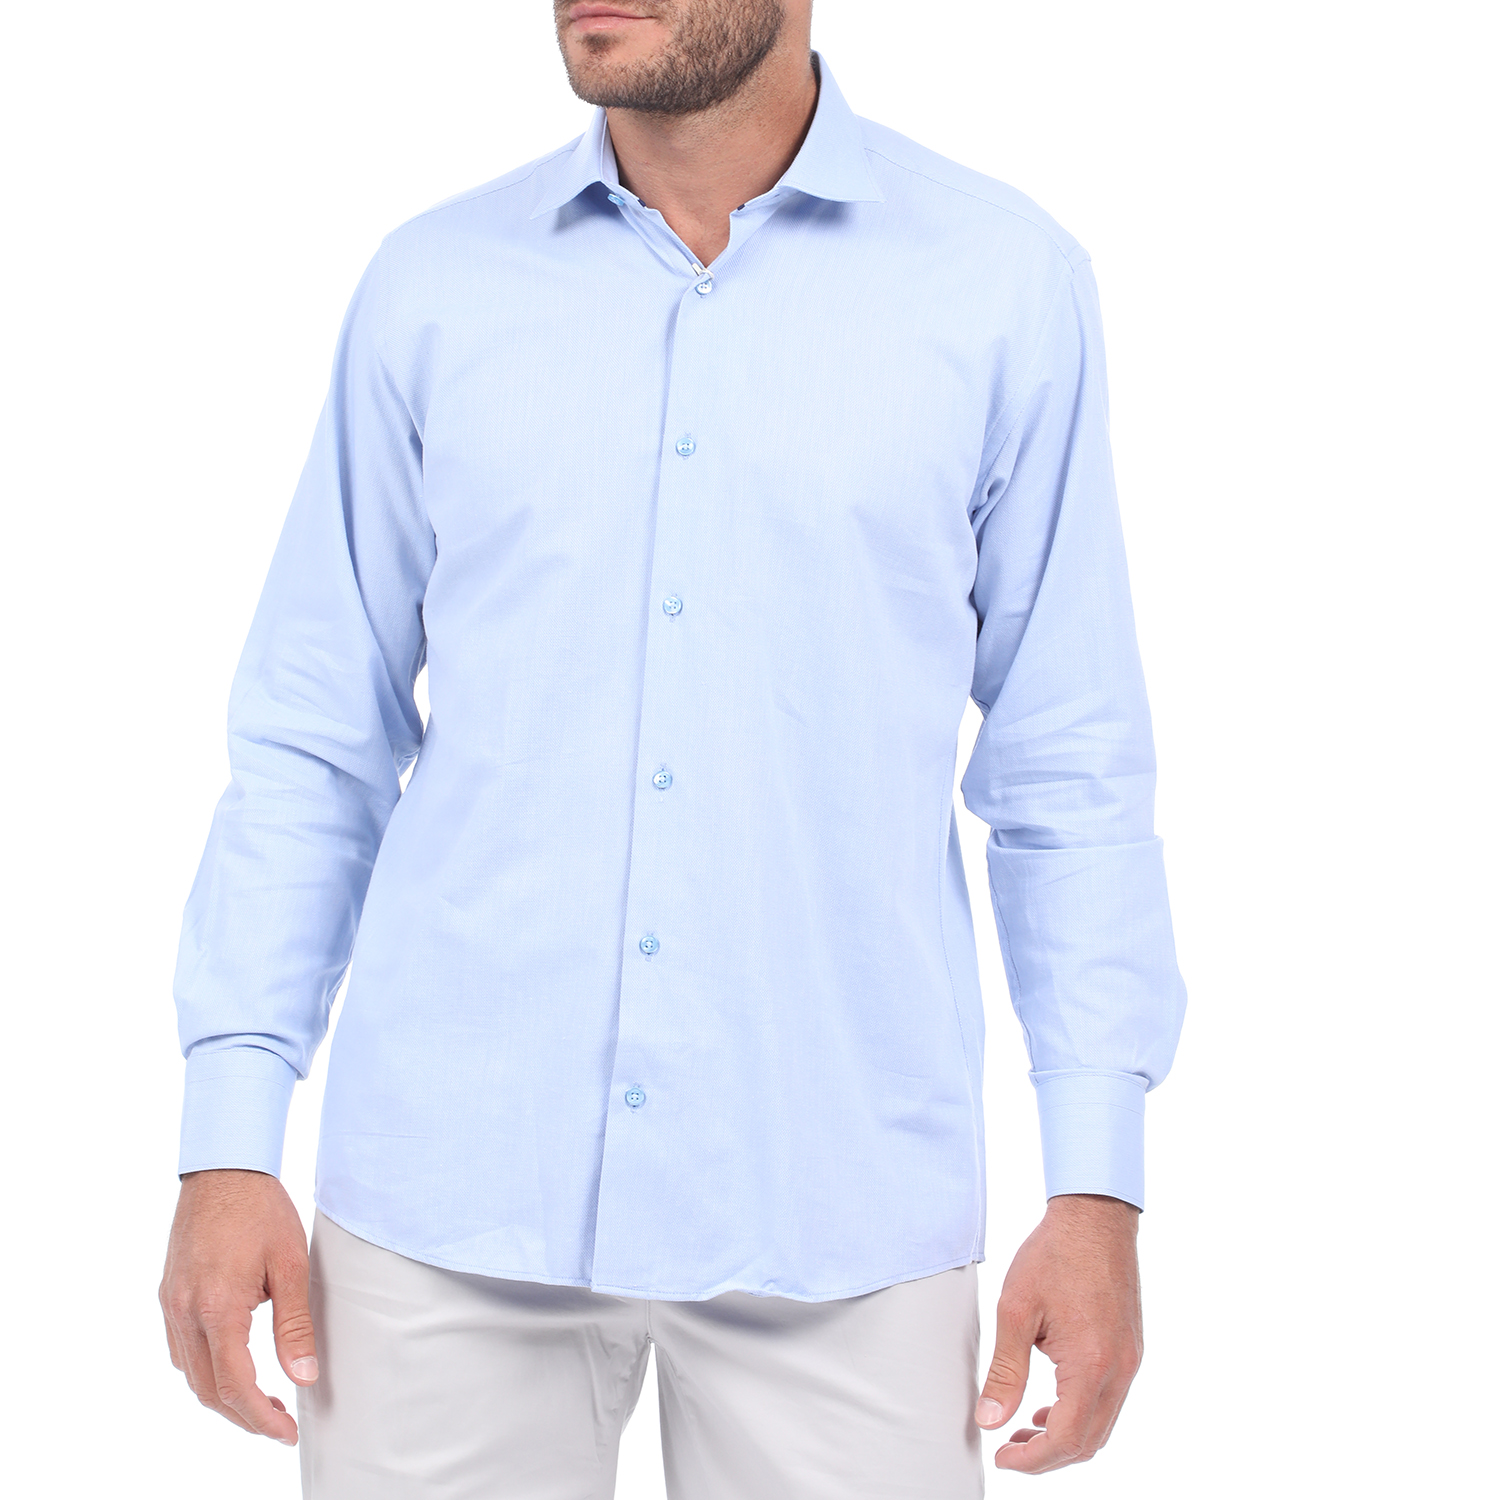 MARTIN & CO MARTIN & CO - Ανδρικό πουκάμισο MARTIN & CO REGULAR FIT μπλε